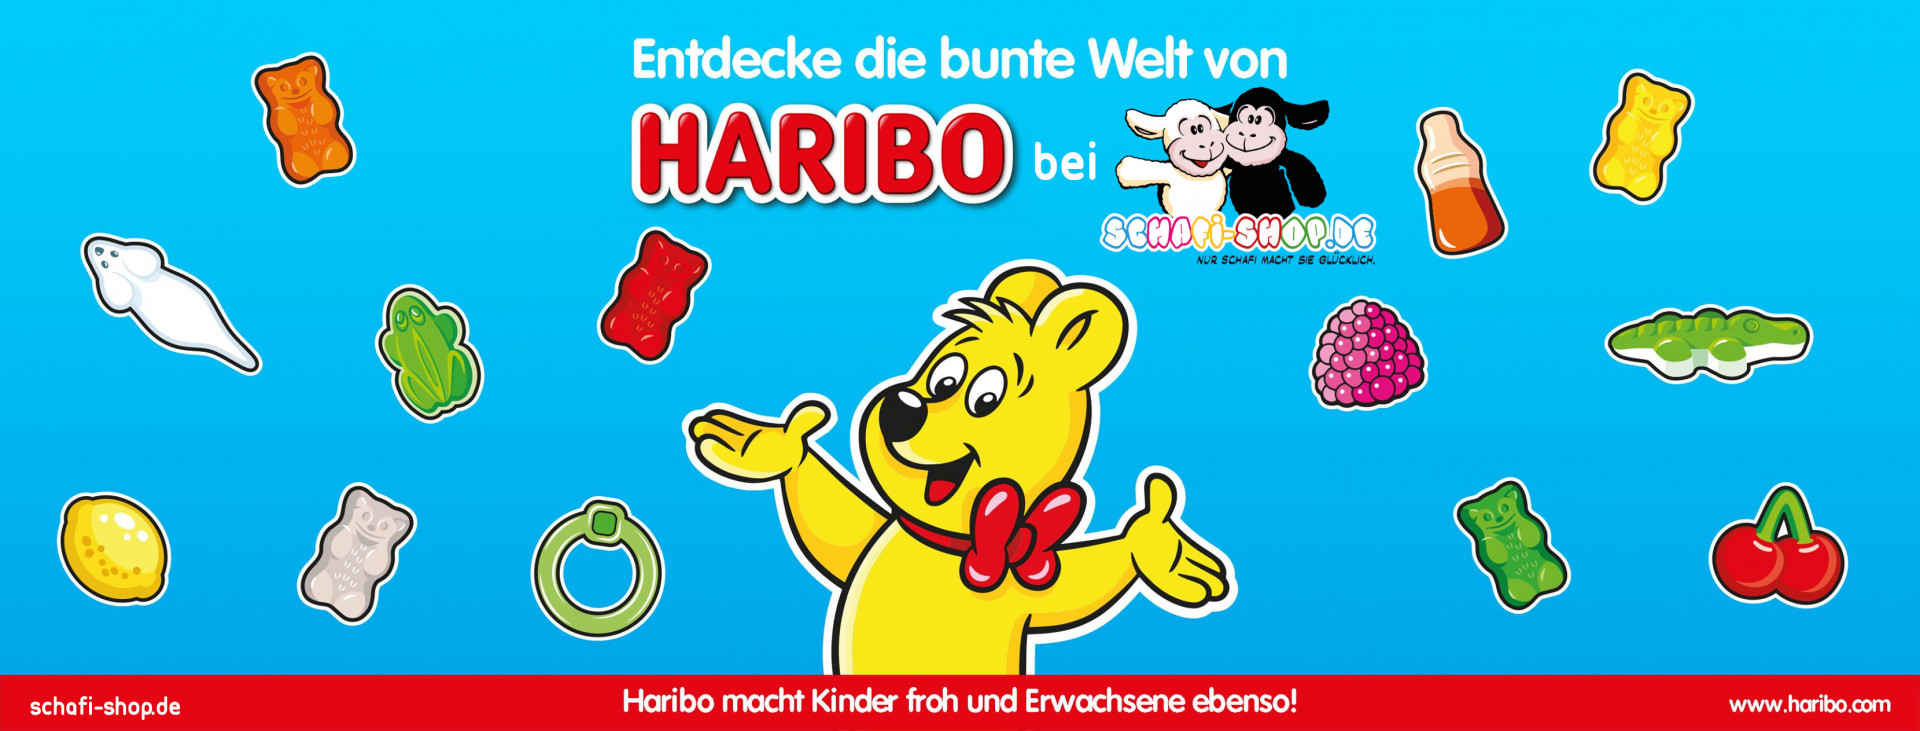 Schafi and Haribo logos and individual Haribo products